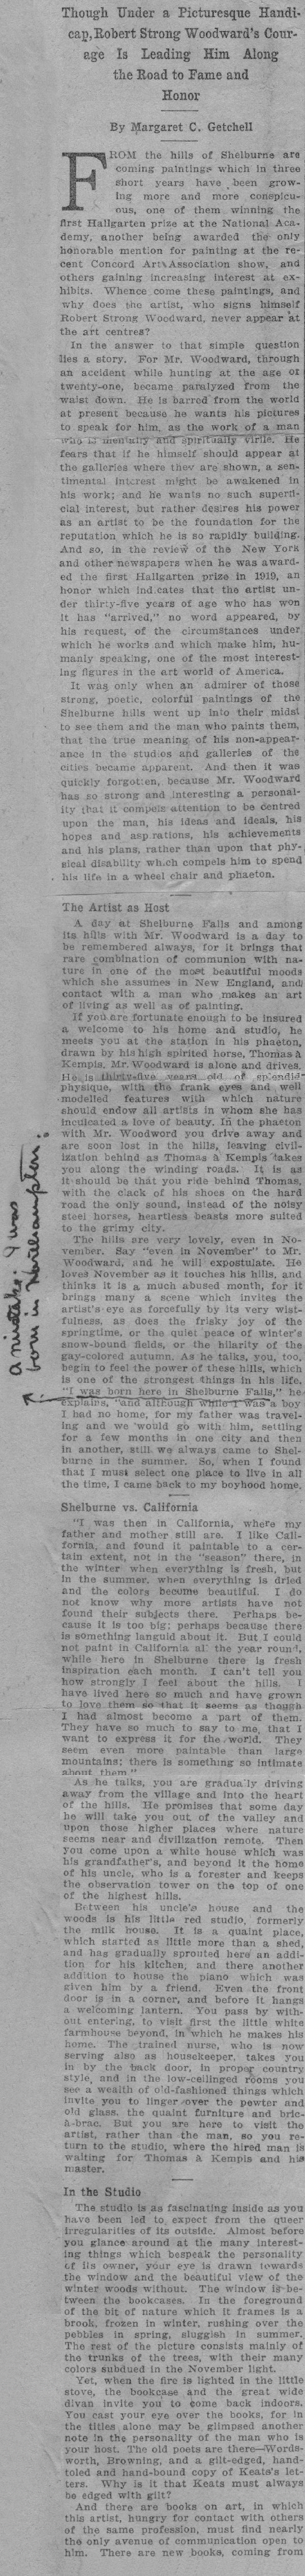 Boston Evening Transcript December 8, 1920 